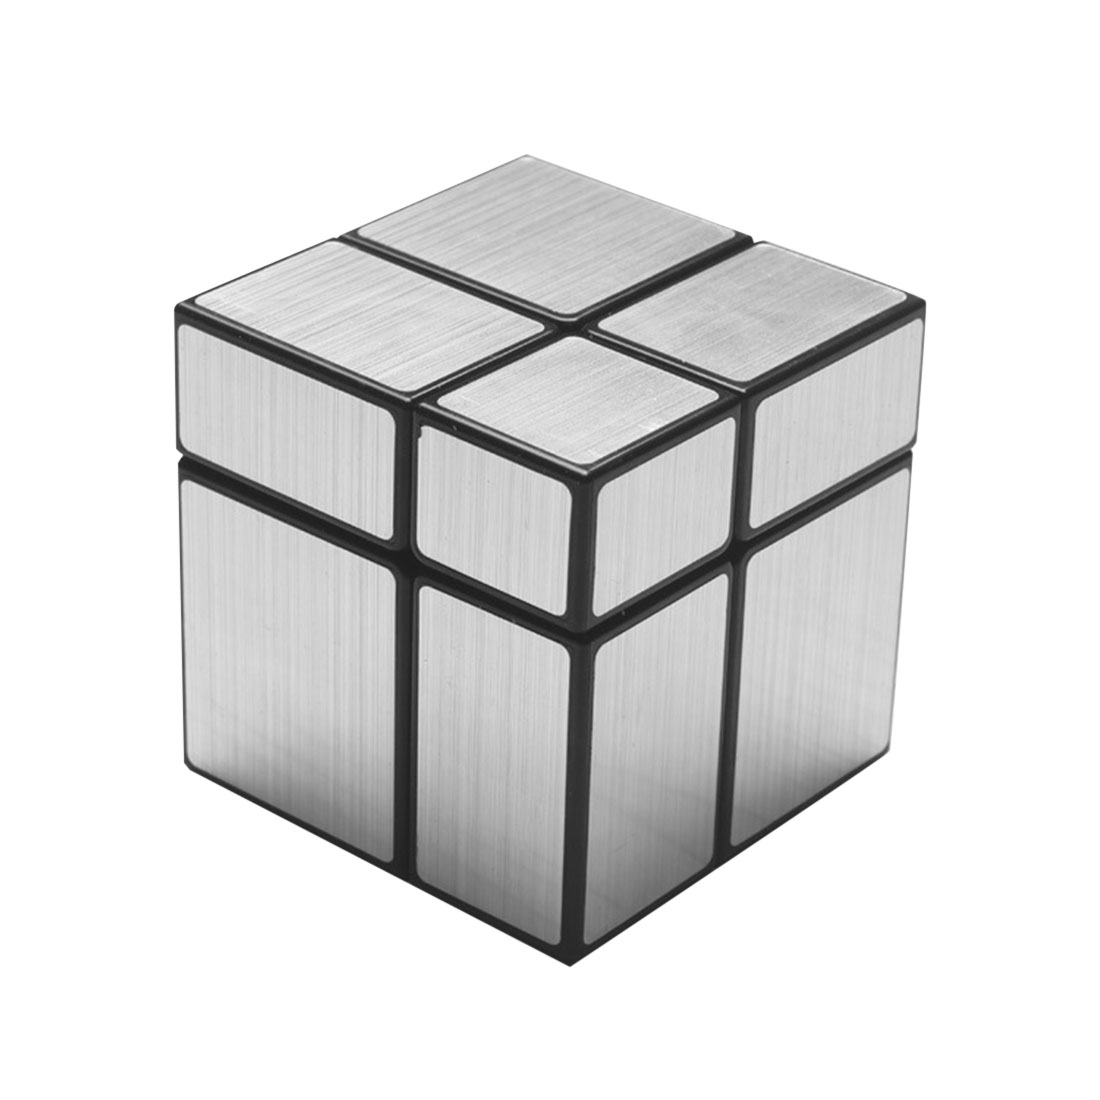 ShengShou 2x2 Mirror Magic Cube (Silver)